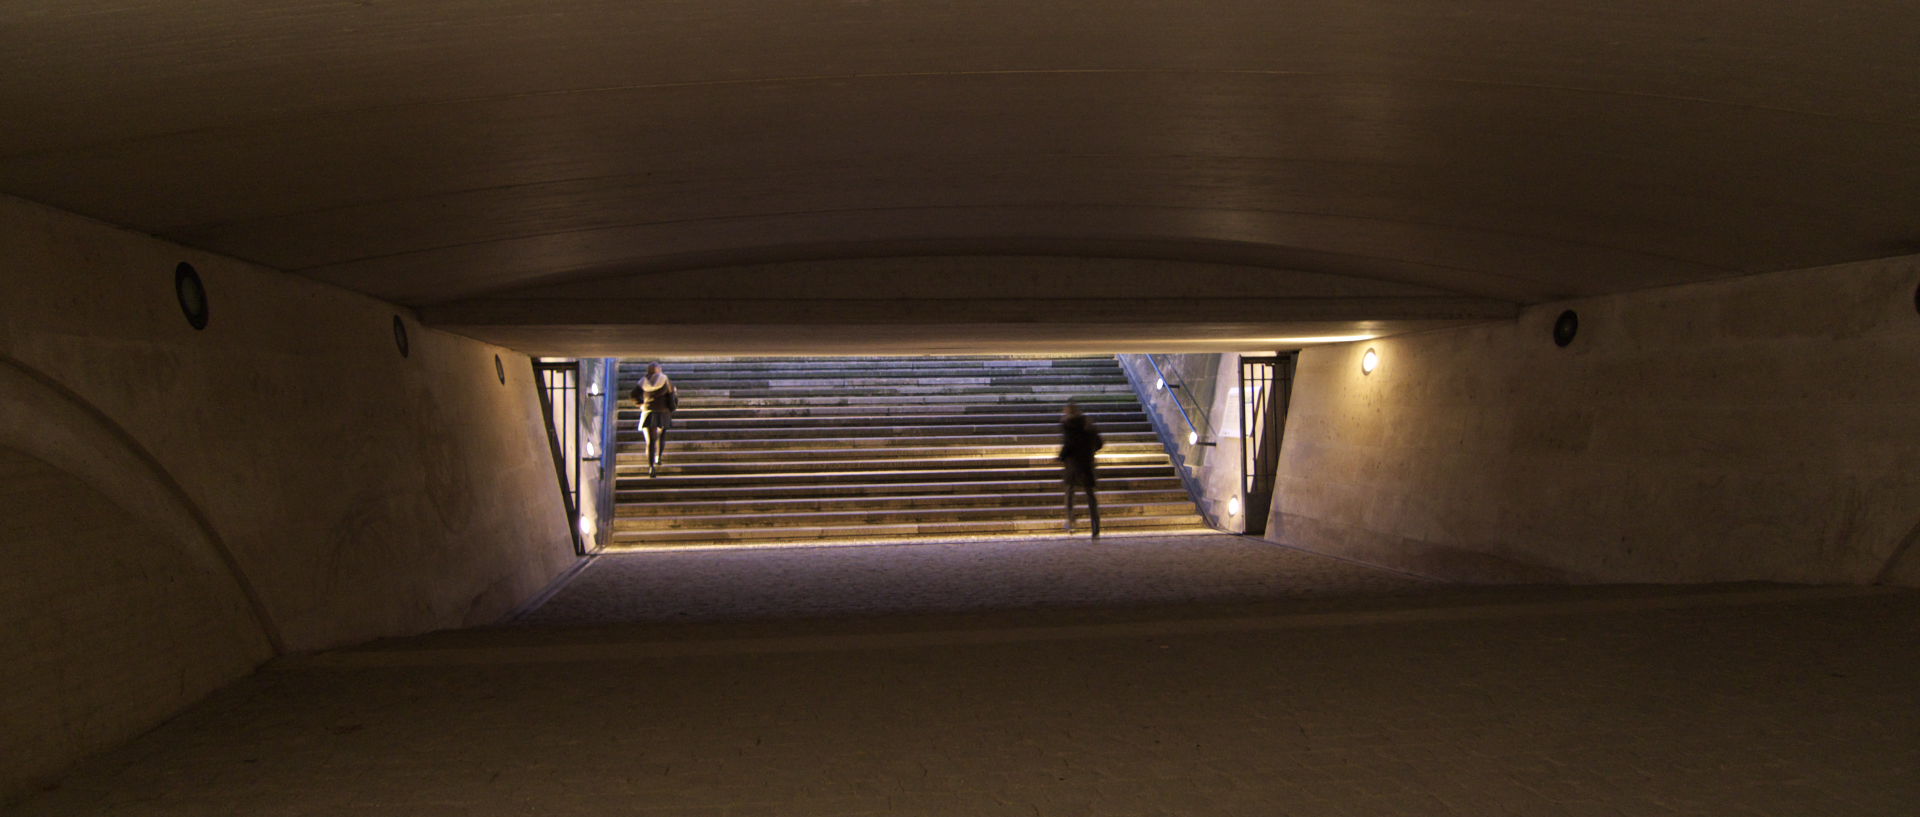 Mercredi 11 février 2009, 18:12, passage souterrain, jardin des Tuileries, à Paris.